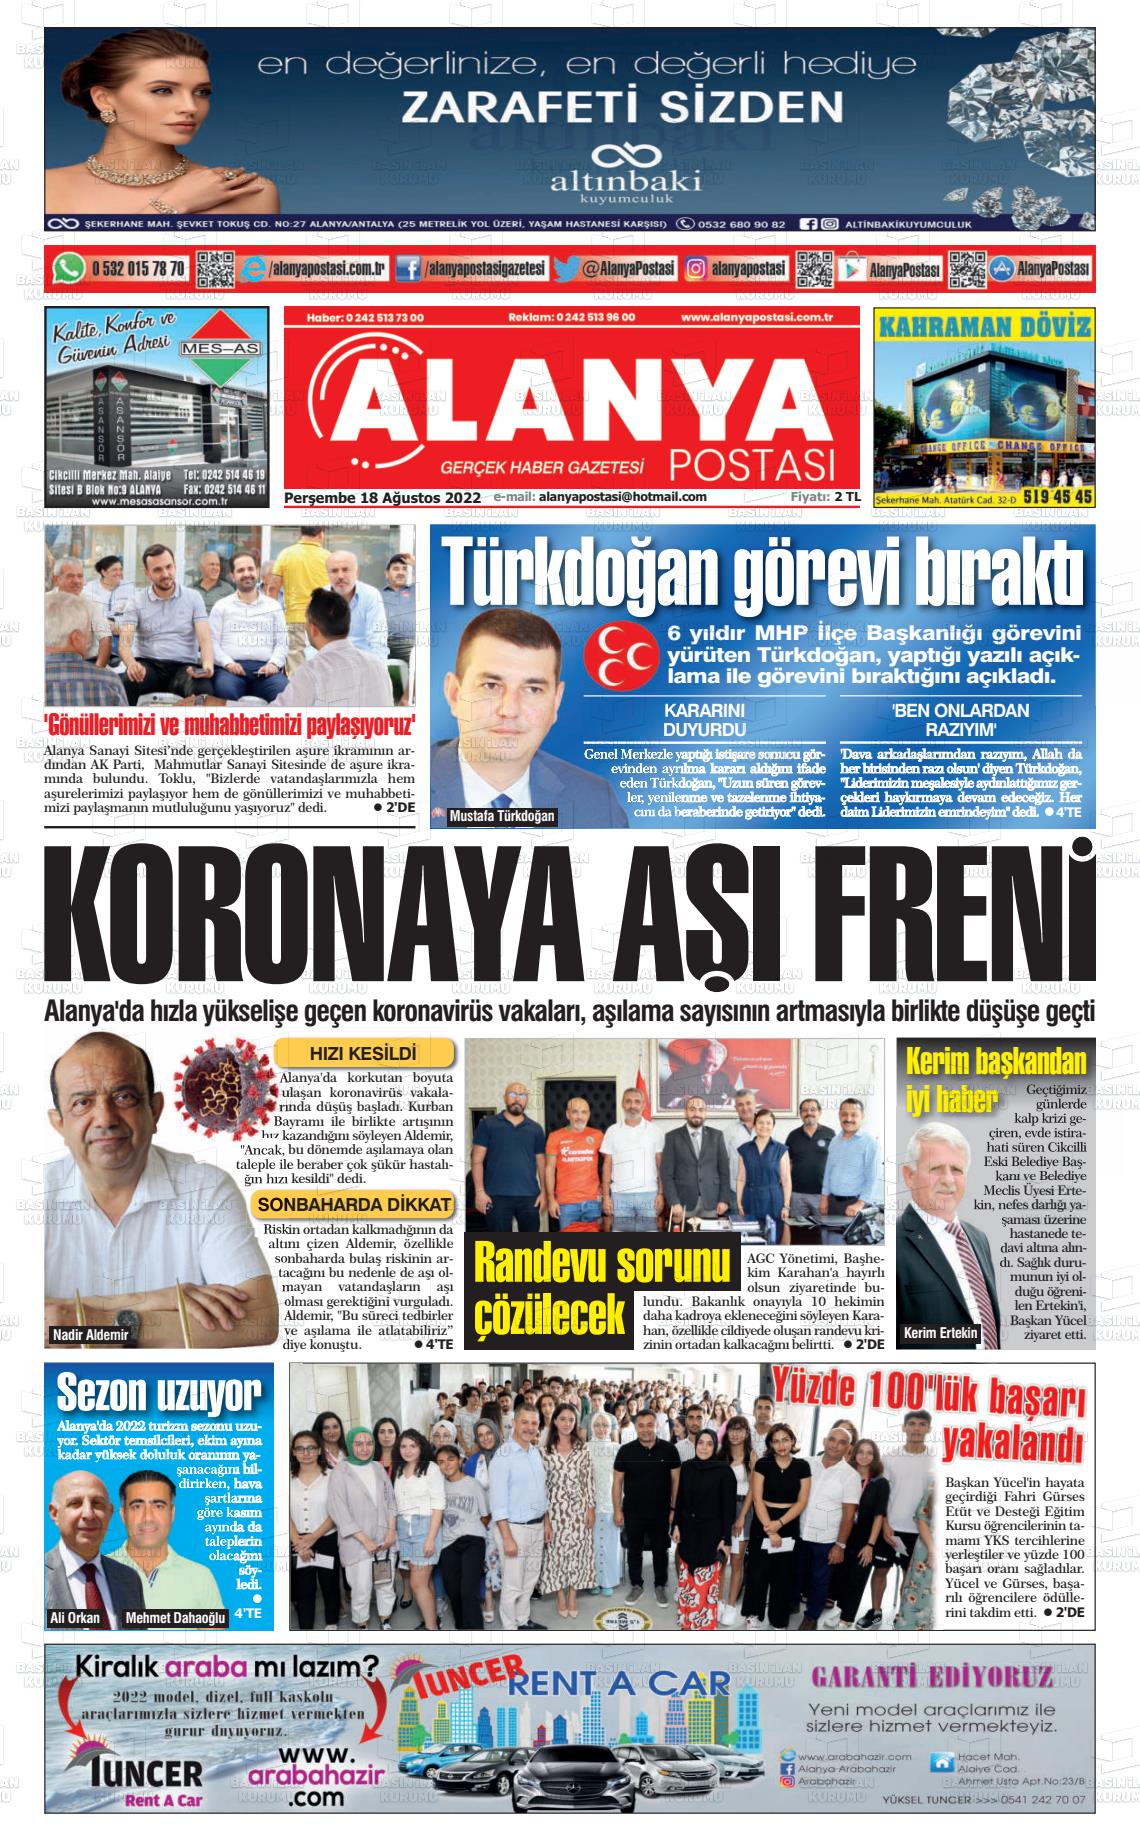 18 Ağustos 2022 Alanya Postası Gazete Manşeti